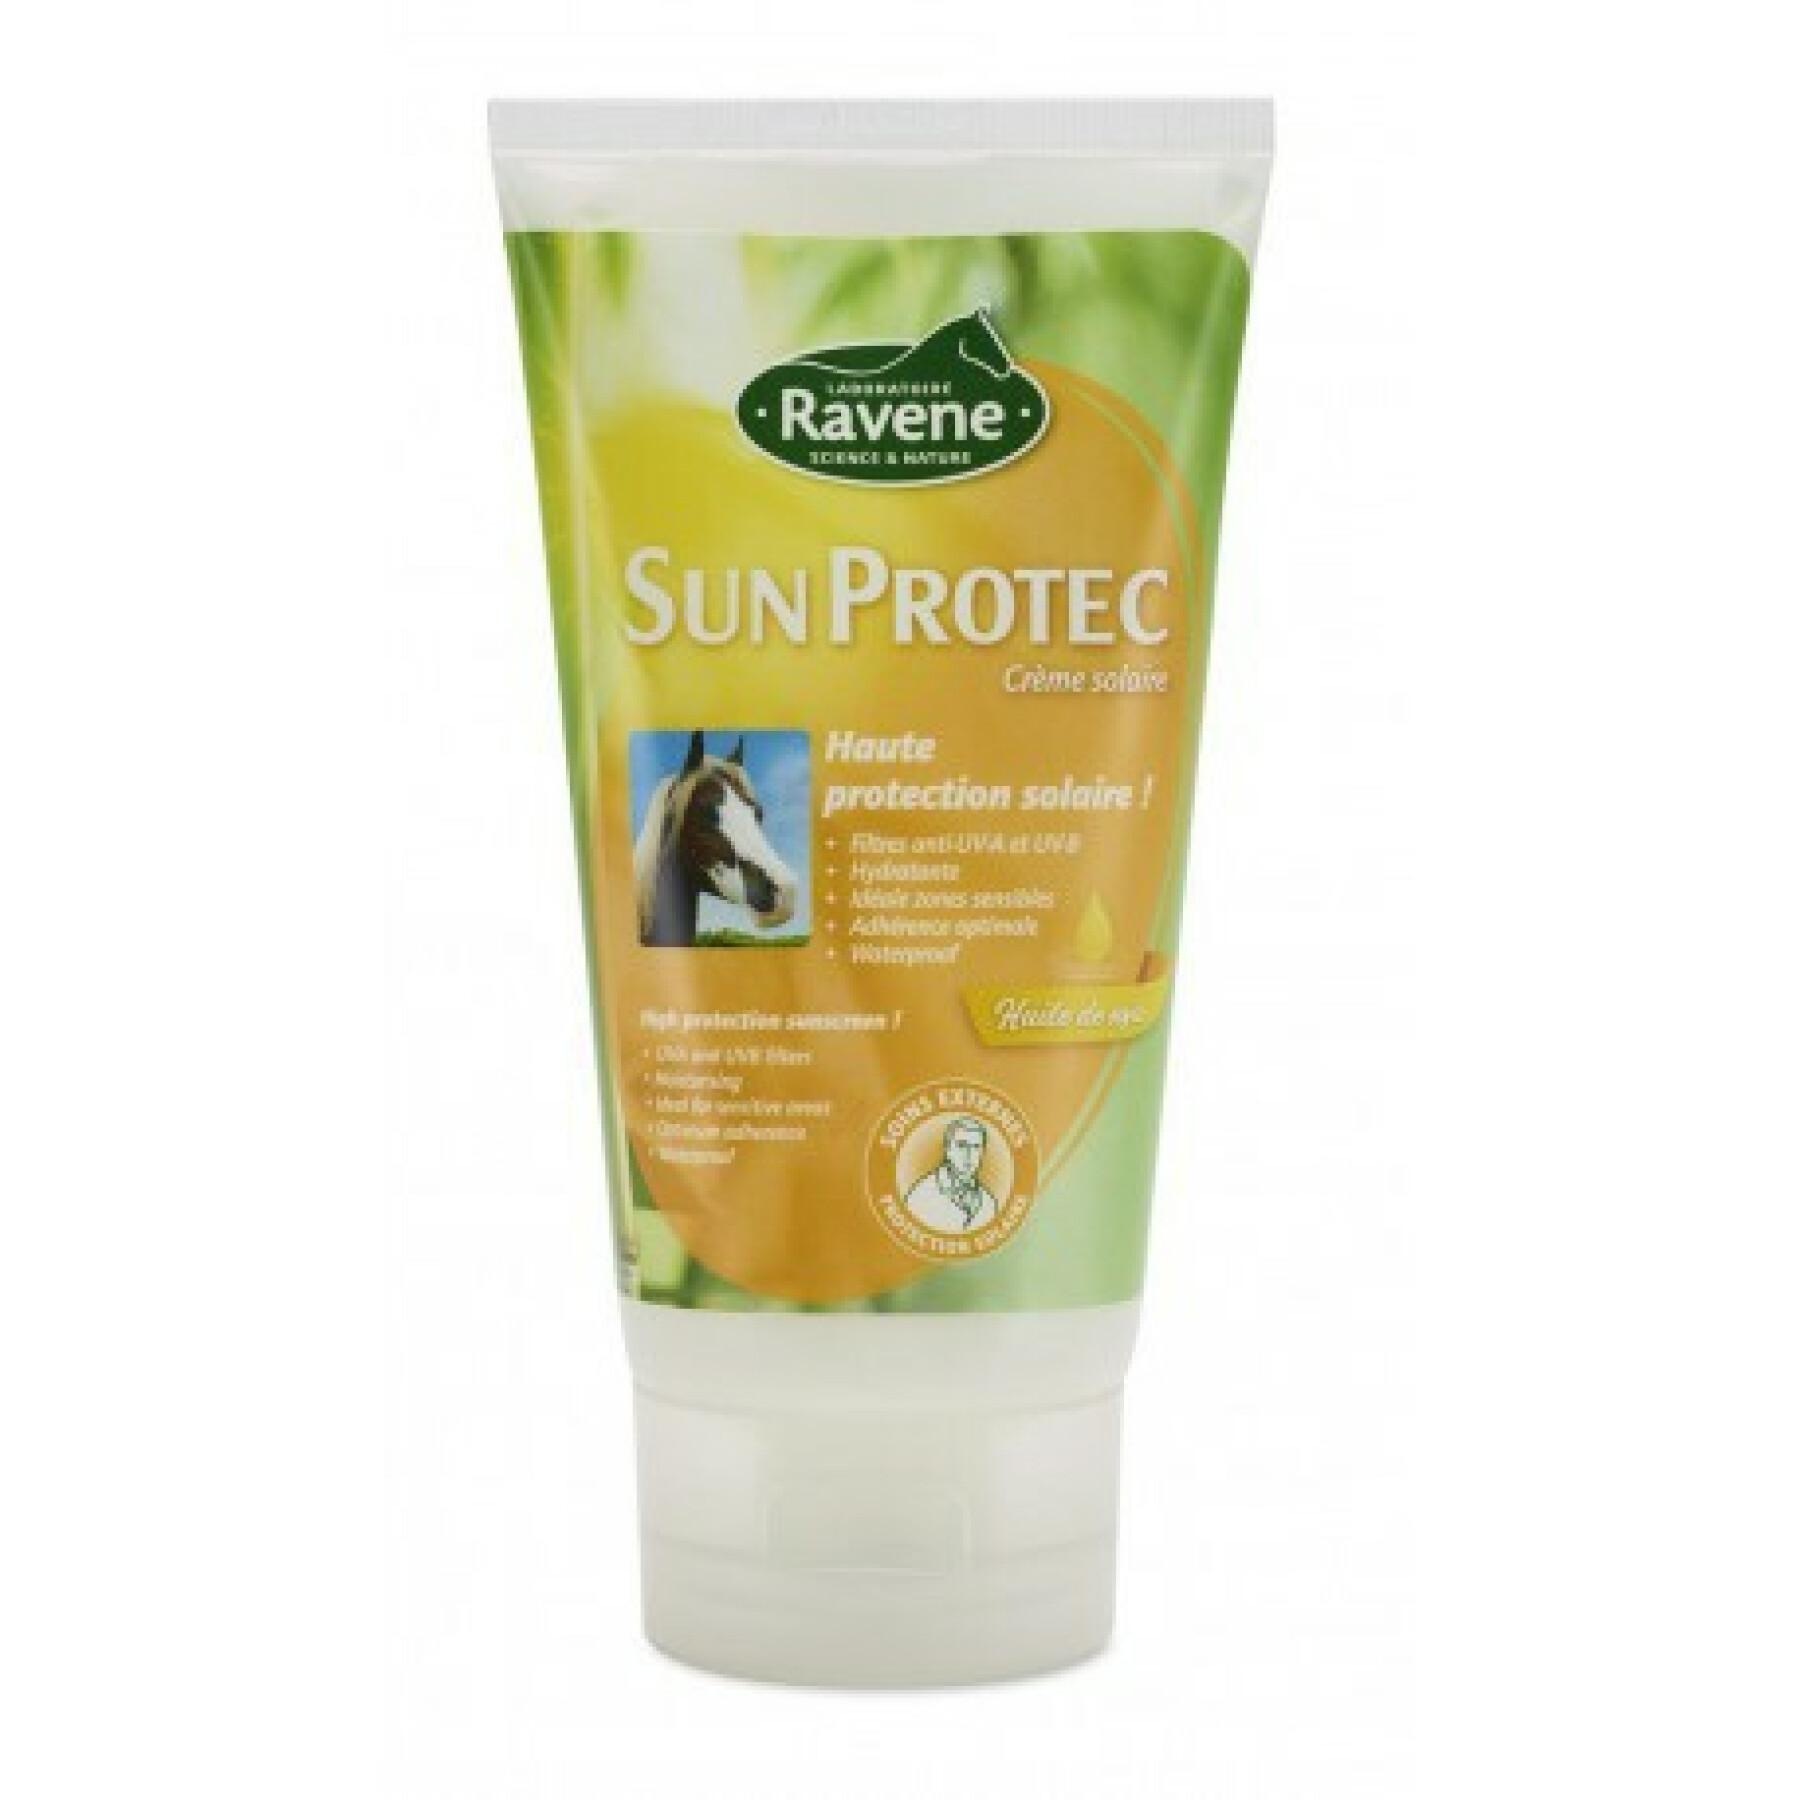 Sunscreen for horses Ravene Sun Protec